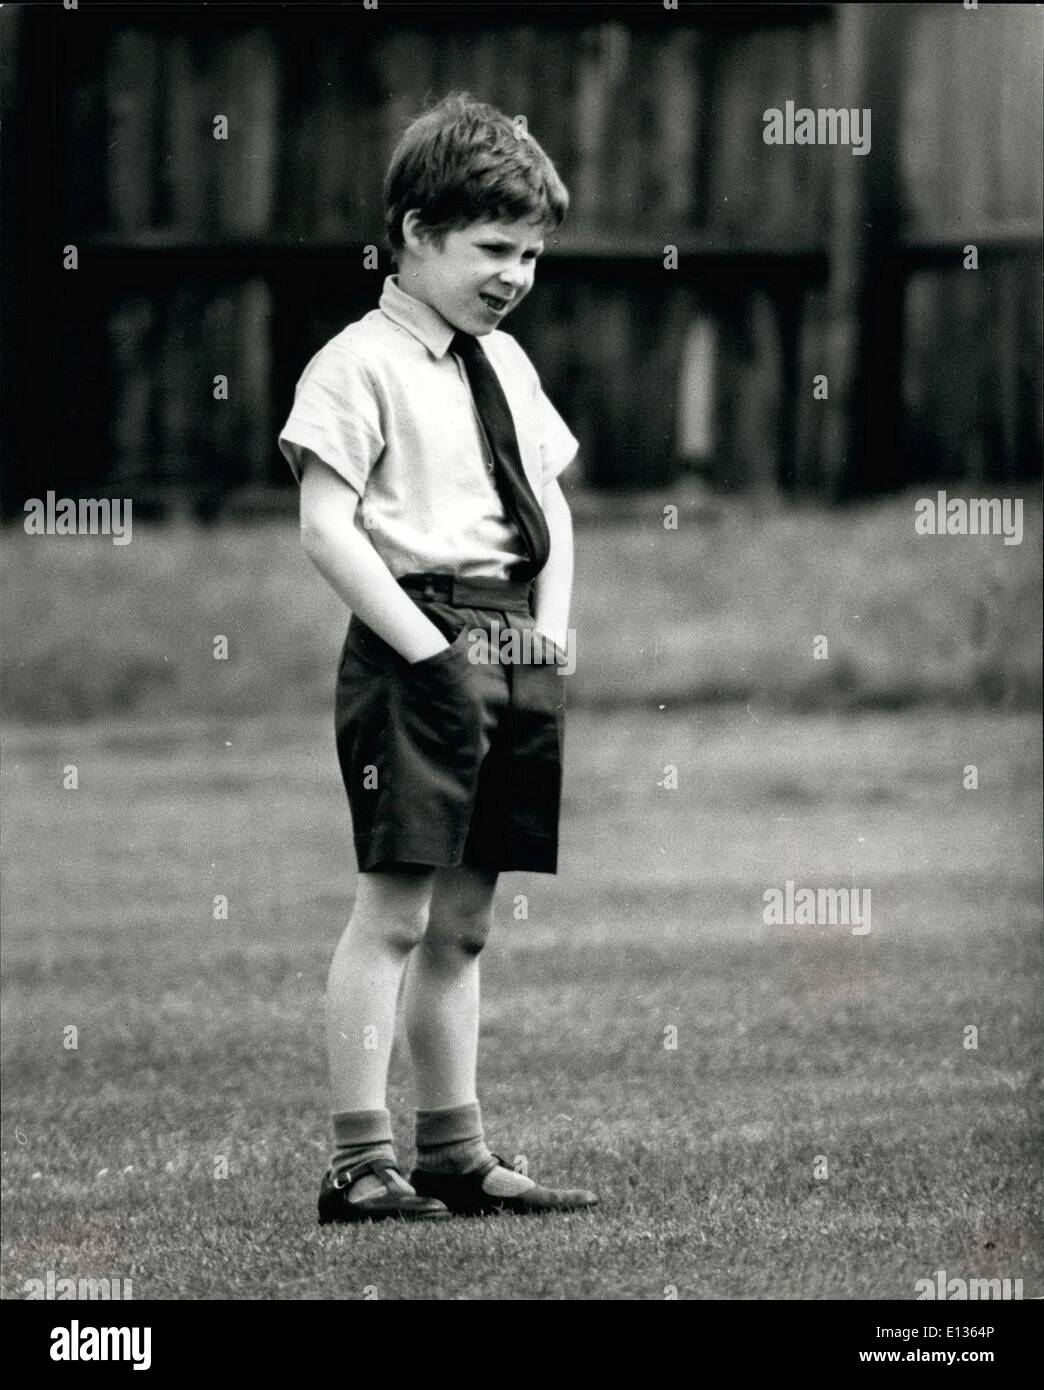 28 févr. 2012 - Juste un petit garçon sur un terrain de cricket, mais c'est le vicomte Linley, 7 ans, fils de la princesse Margaret, le calme jusqu'à ce que la balle touche son chemin. Banque D'Images